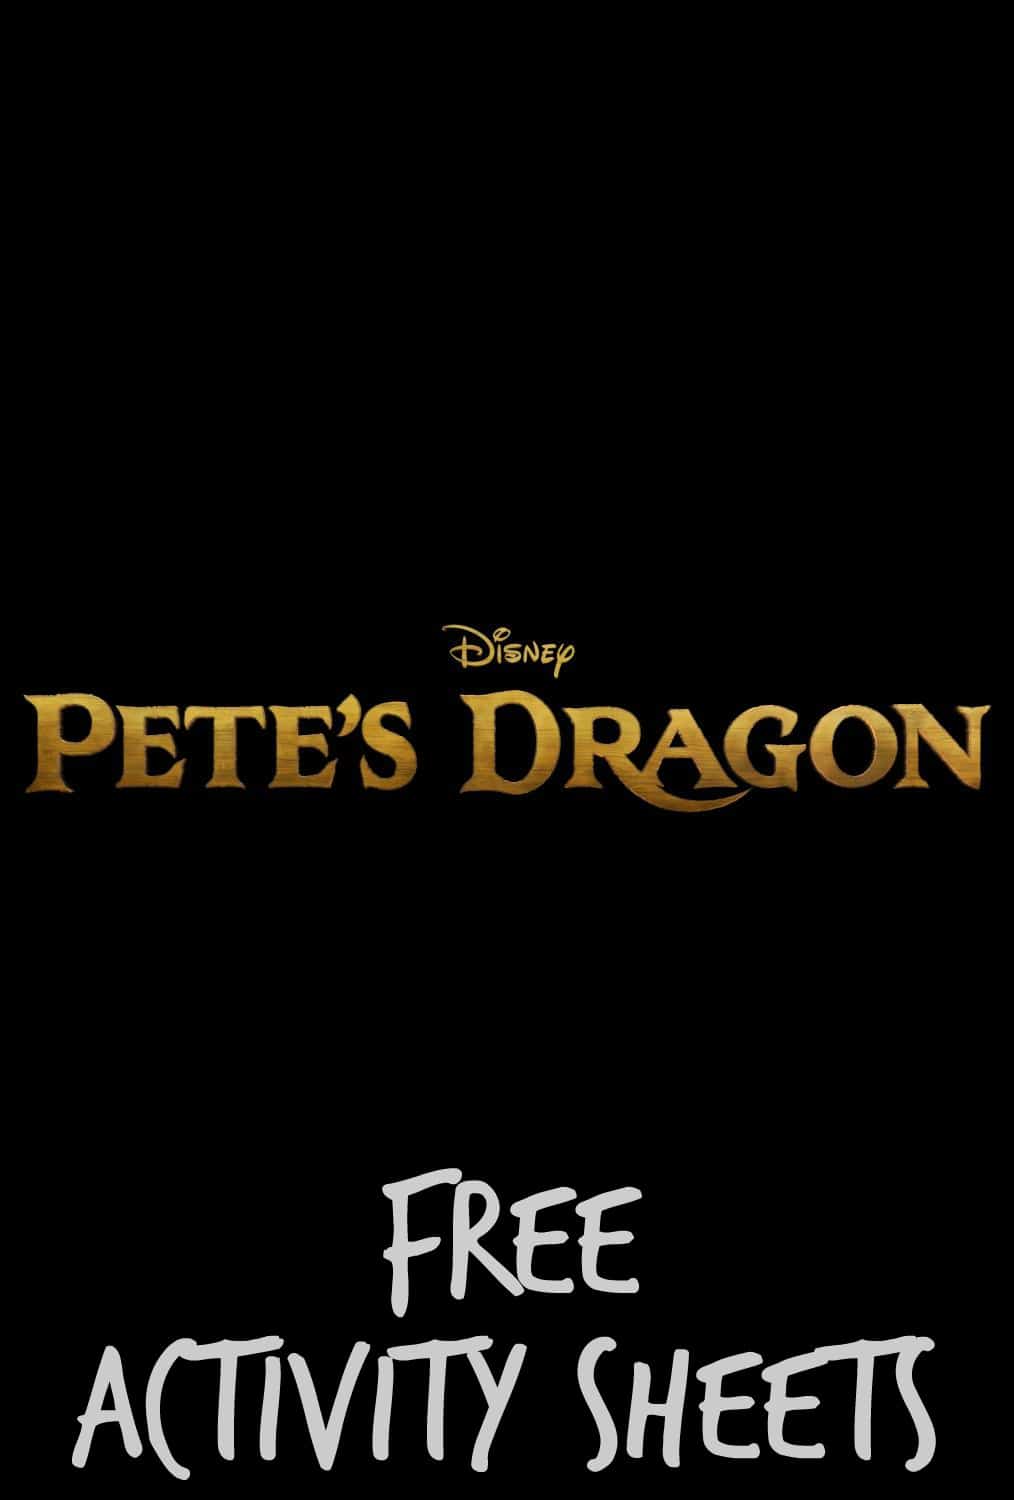 pete's dragon activities